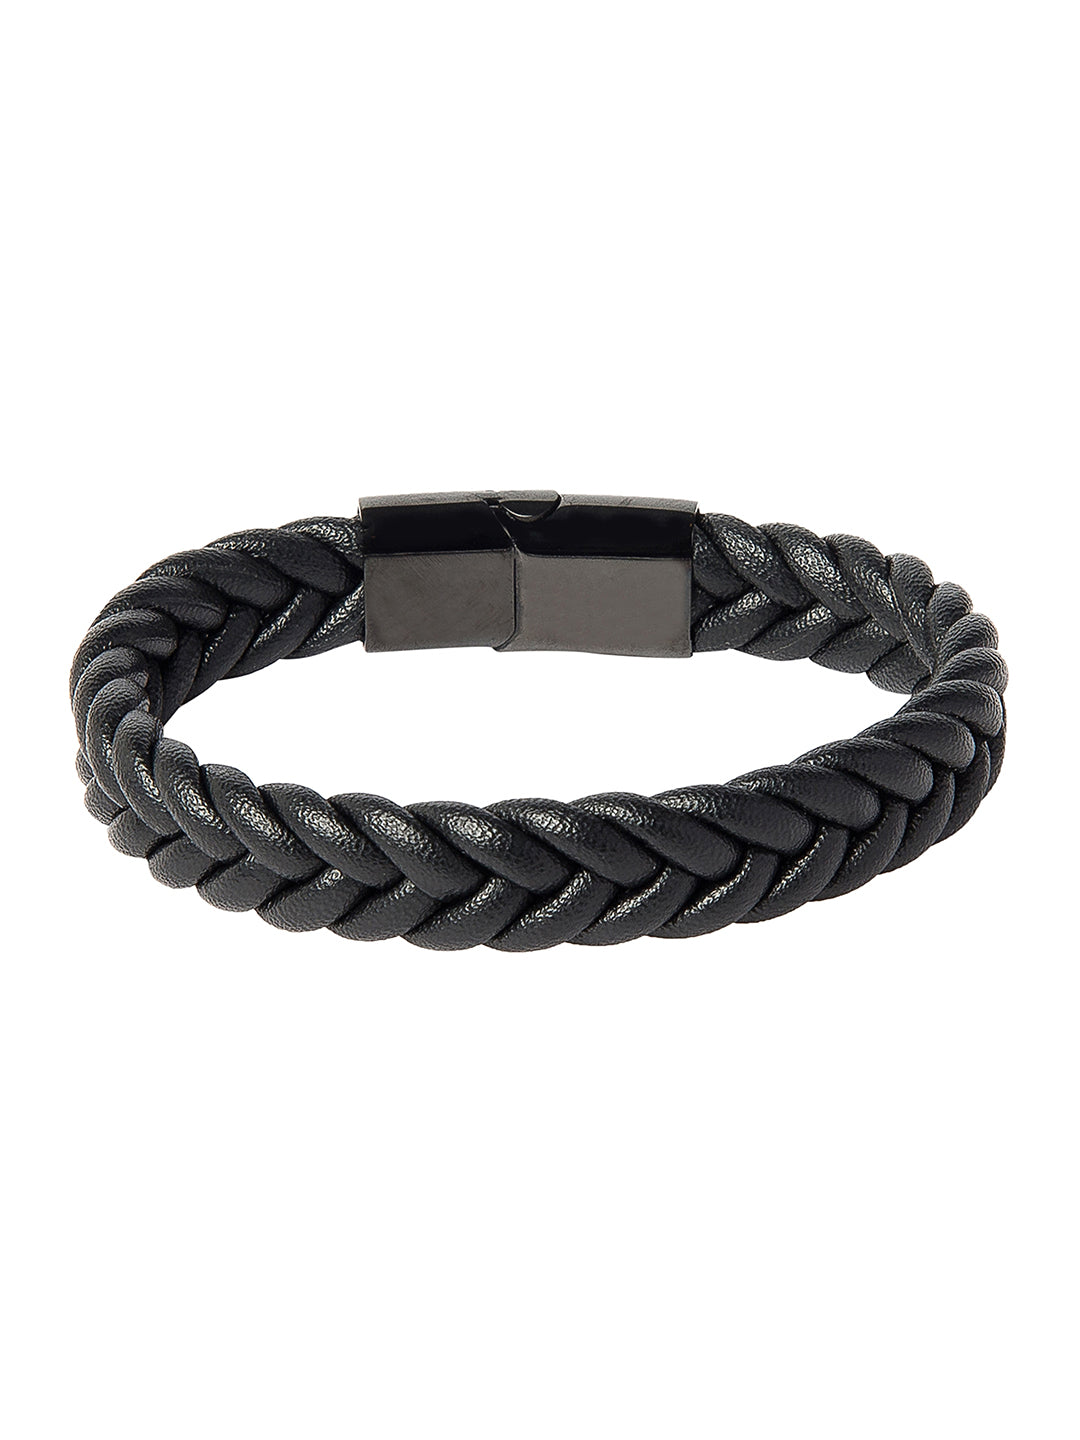 Braided leather bracelet - size 19, Bracelets, Men's